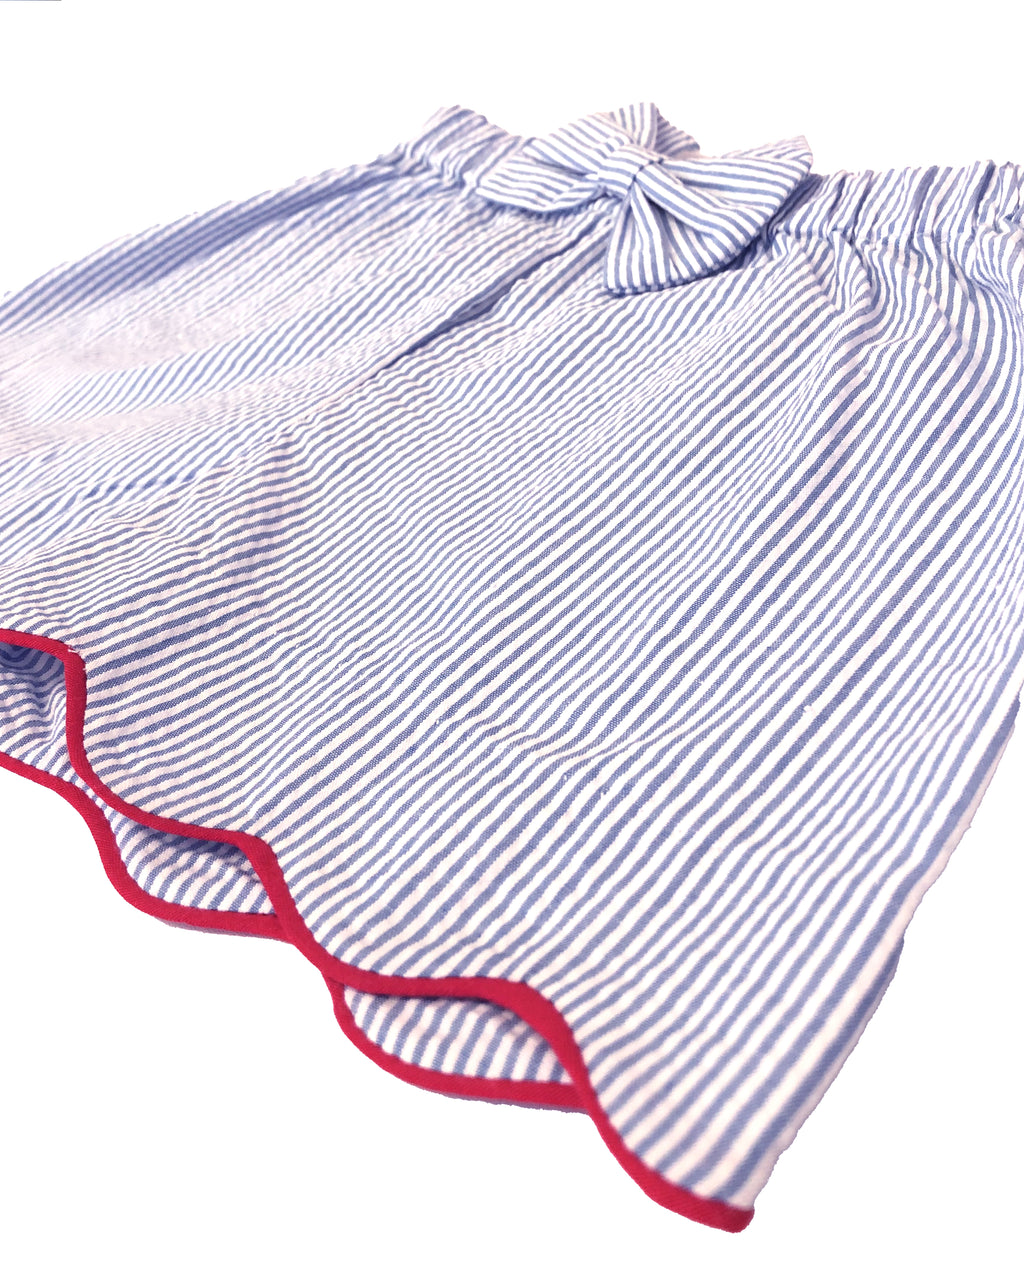 Blue Stripes Seersucker Girl's Shorts - Little Threads Inc. Children's Clothing